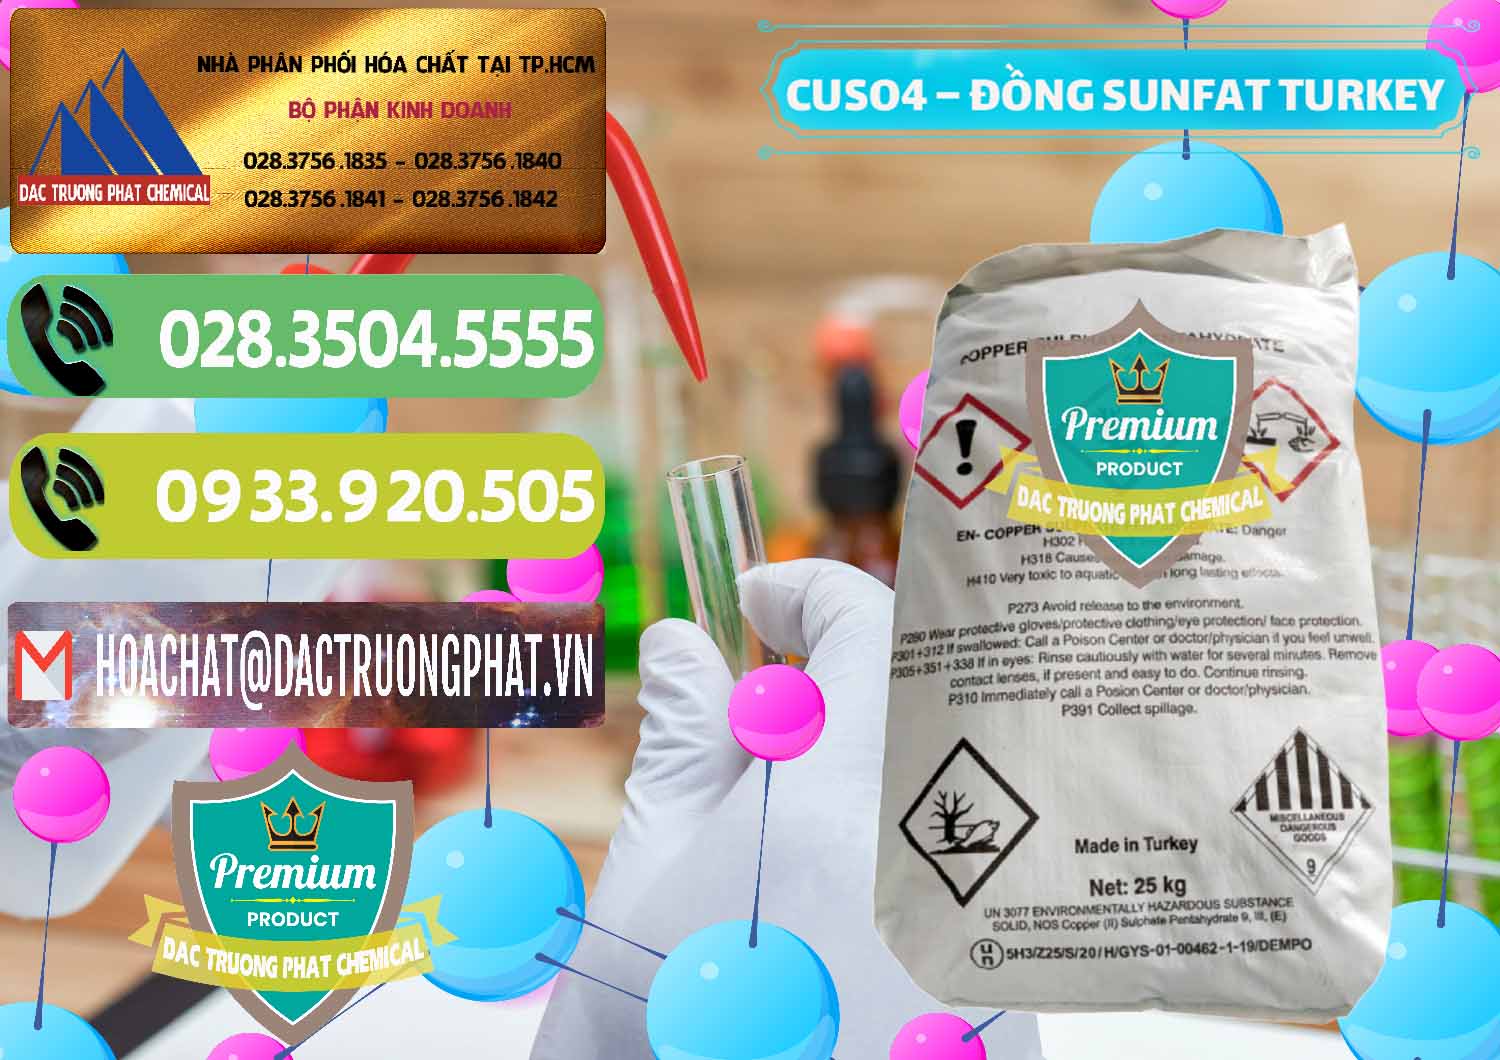 Nơi nhập khẩu & bán CuSO4 – Đồng Sunfat Thổ Nhĩ Kỳ Turkey - 0481 - Công ty nhập khẩu & phân phối hóa chất tại TP.HCM - hoachatmientay.vn